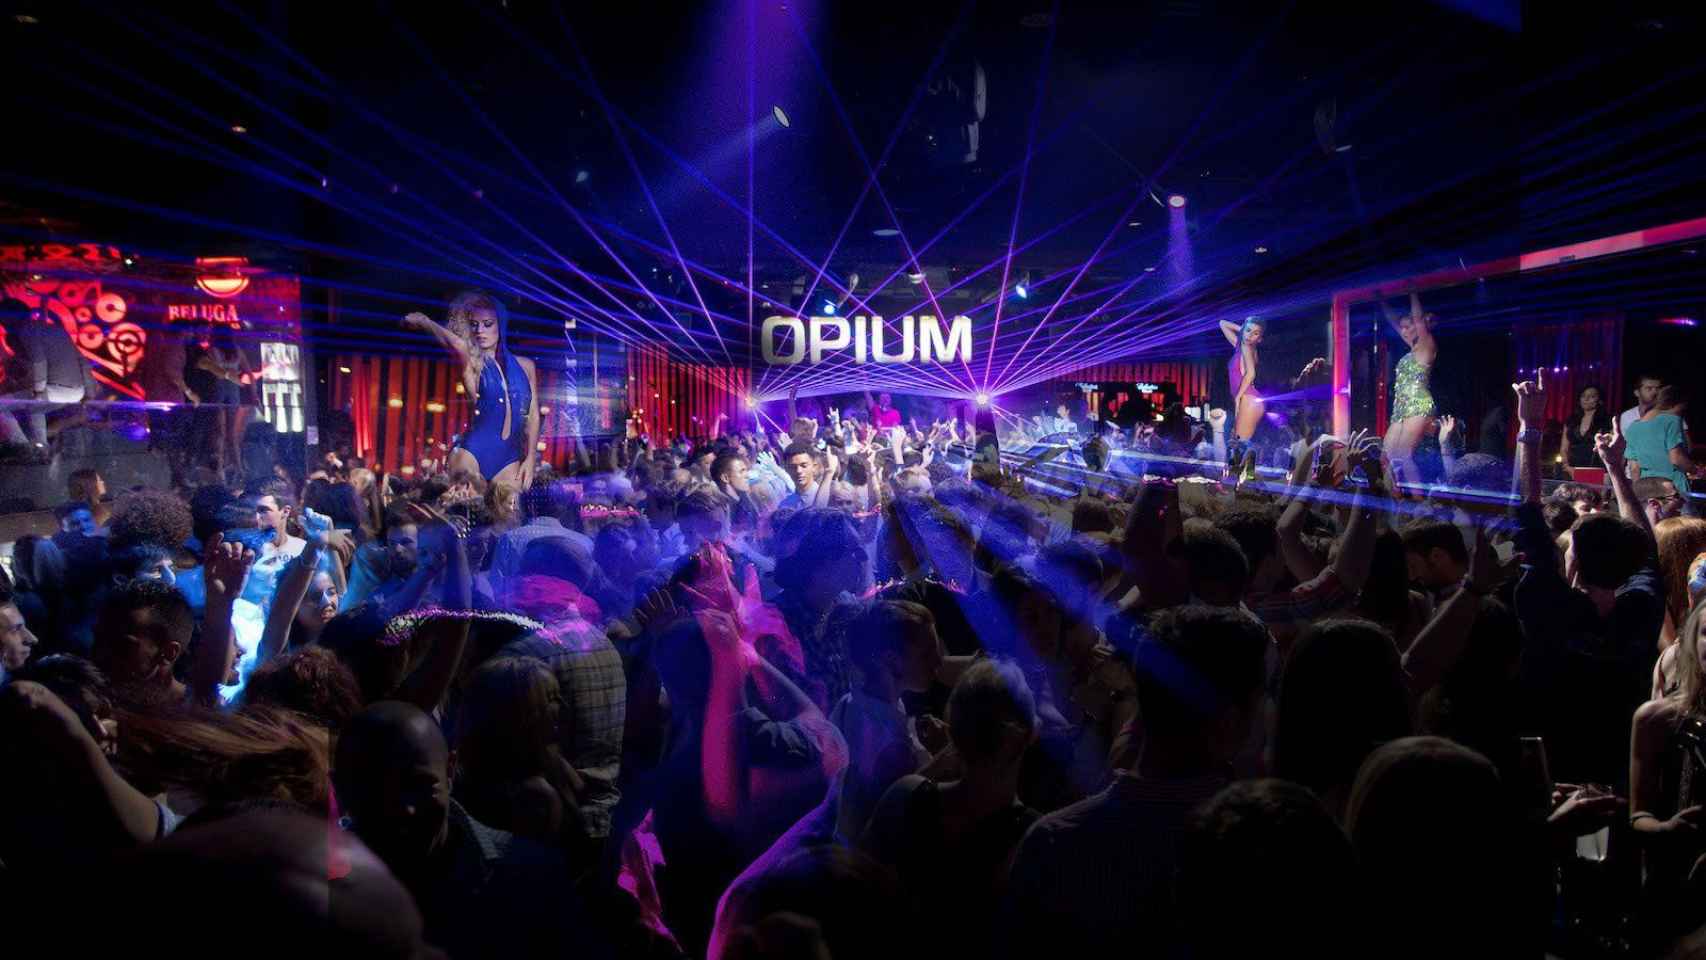 Interior de la discoteca Opium de Barcelona llena de gente en una imagen de archivo